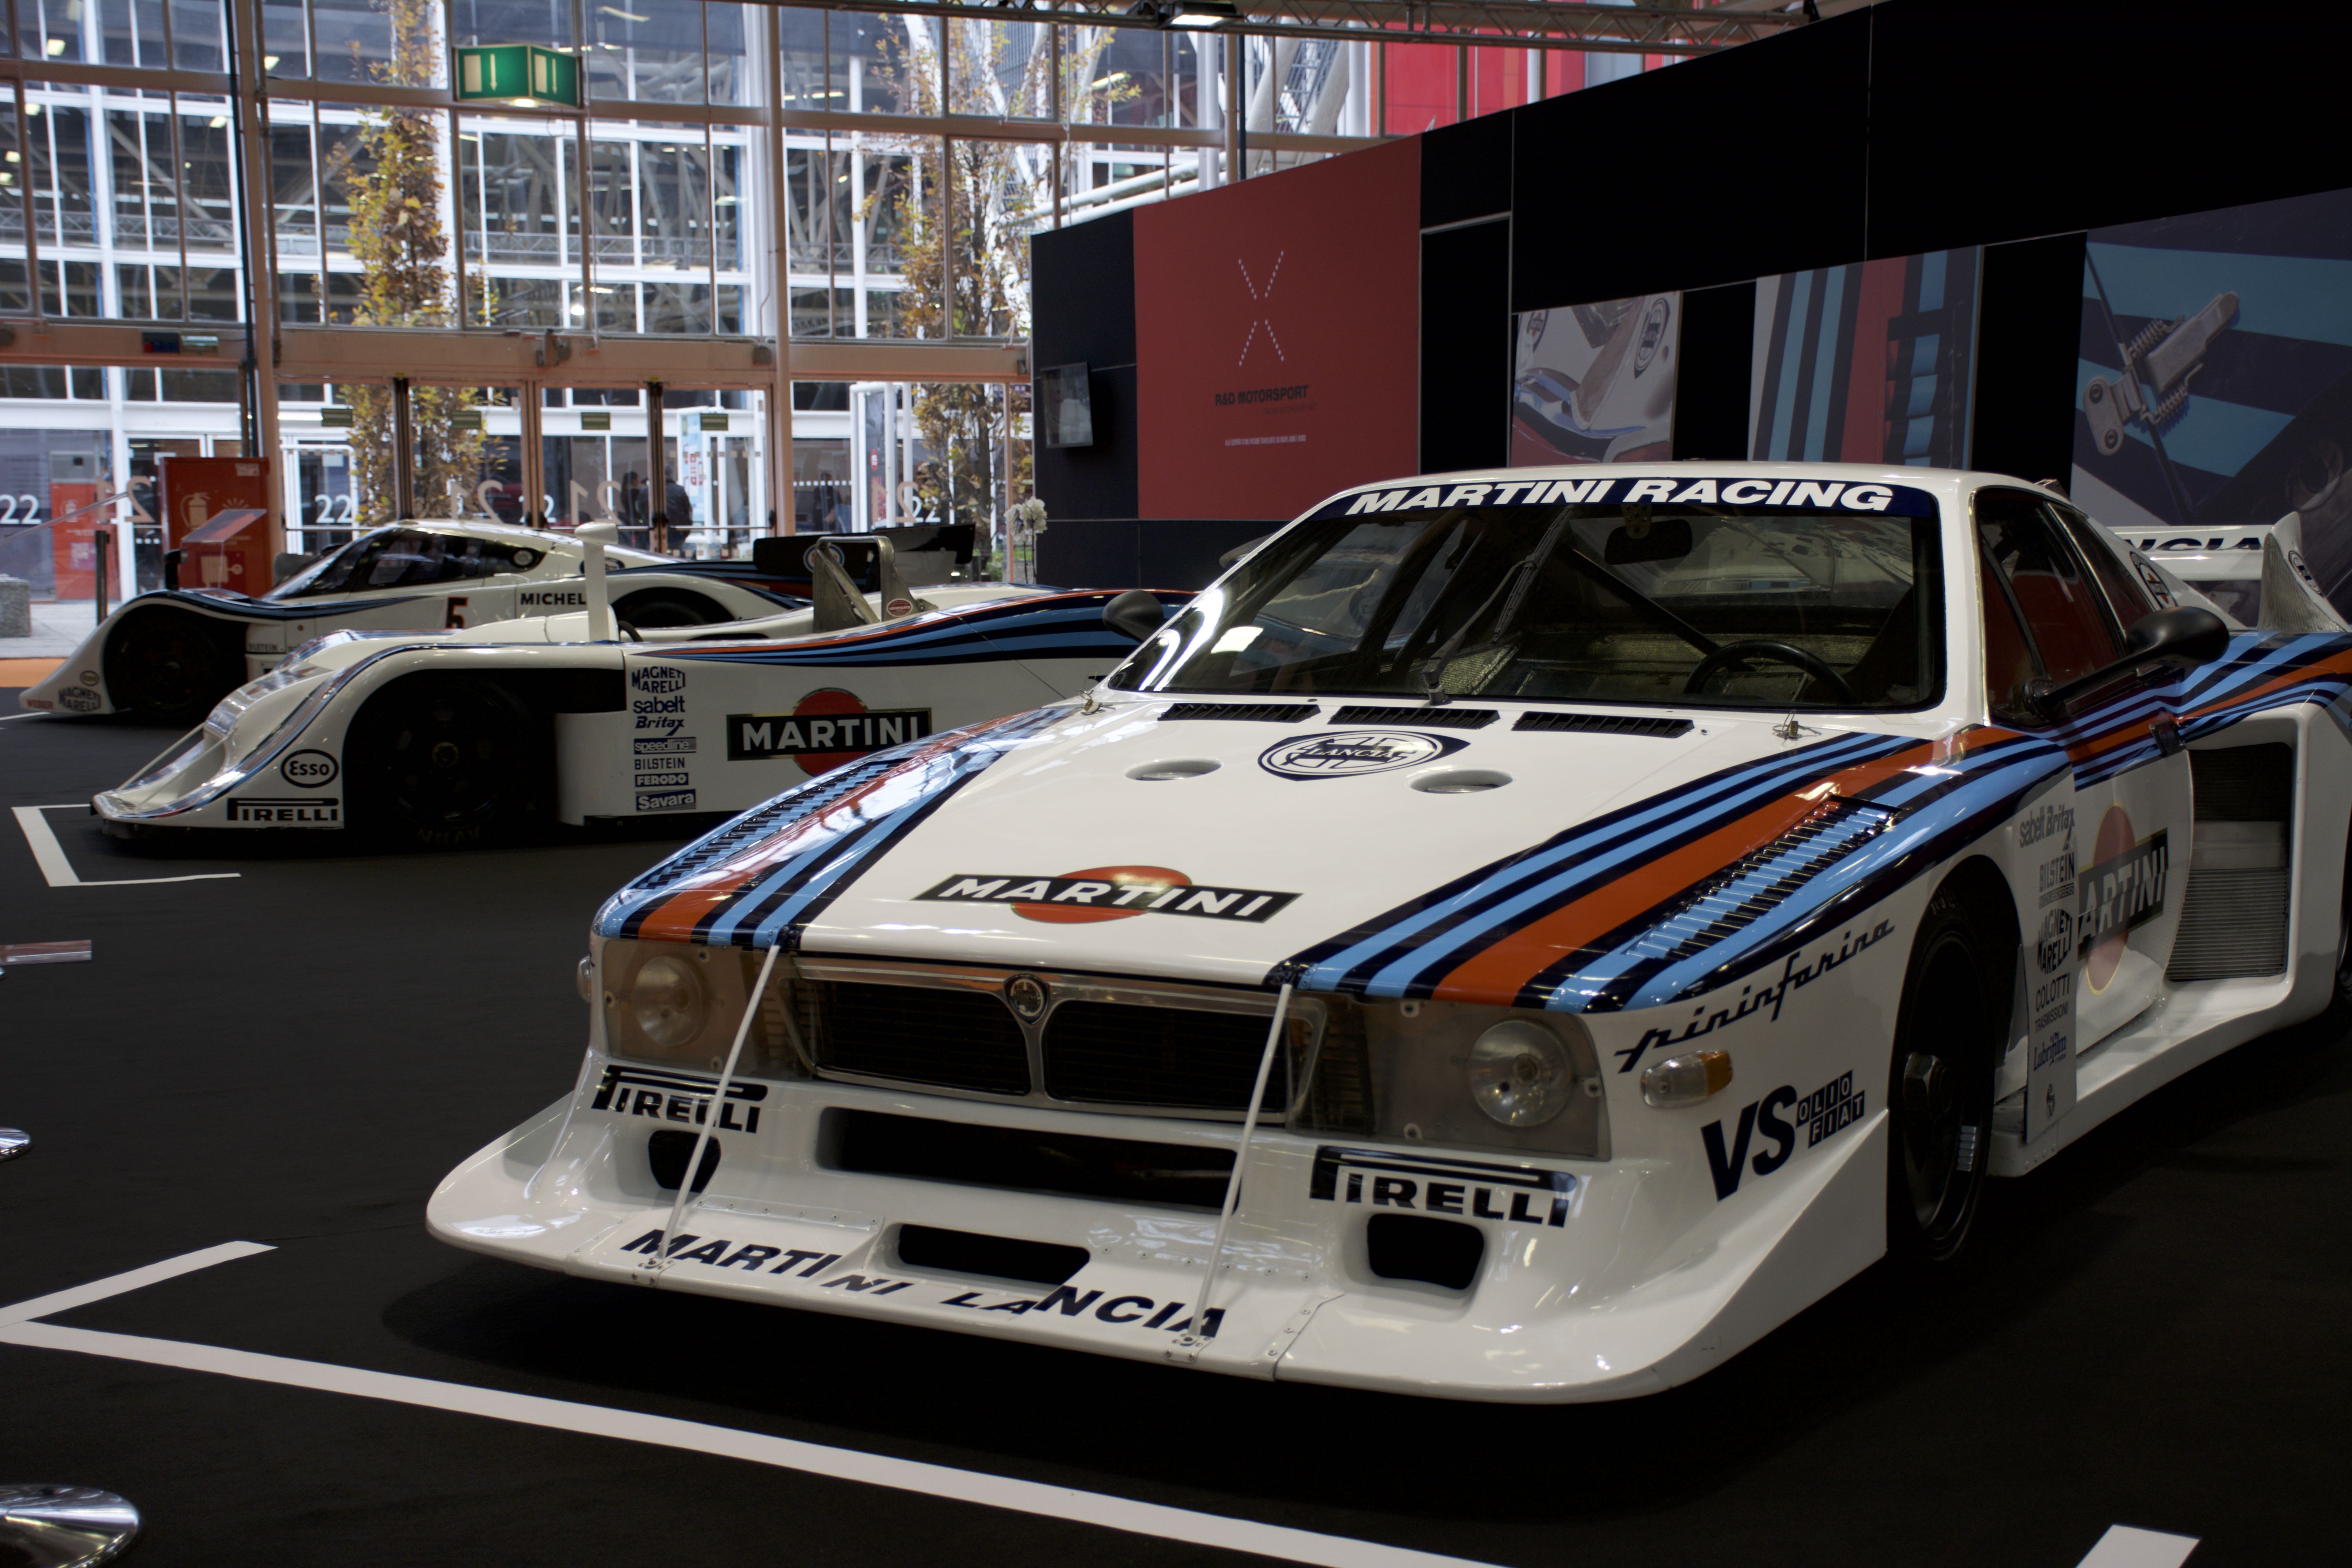 E quando si parla di rally, si ricordano le imprese Martini Racing...